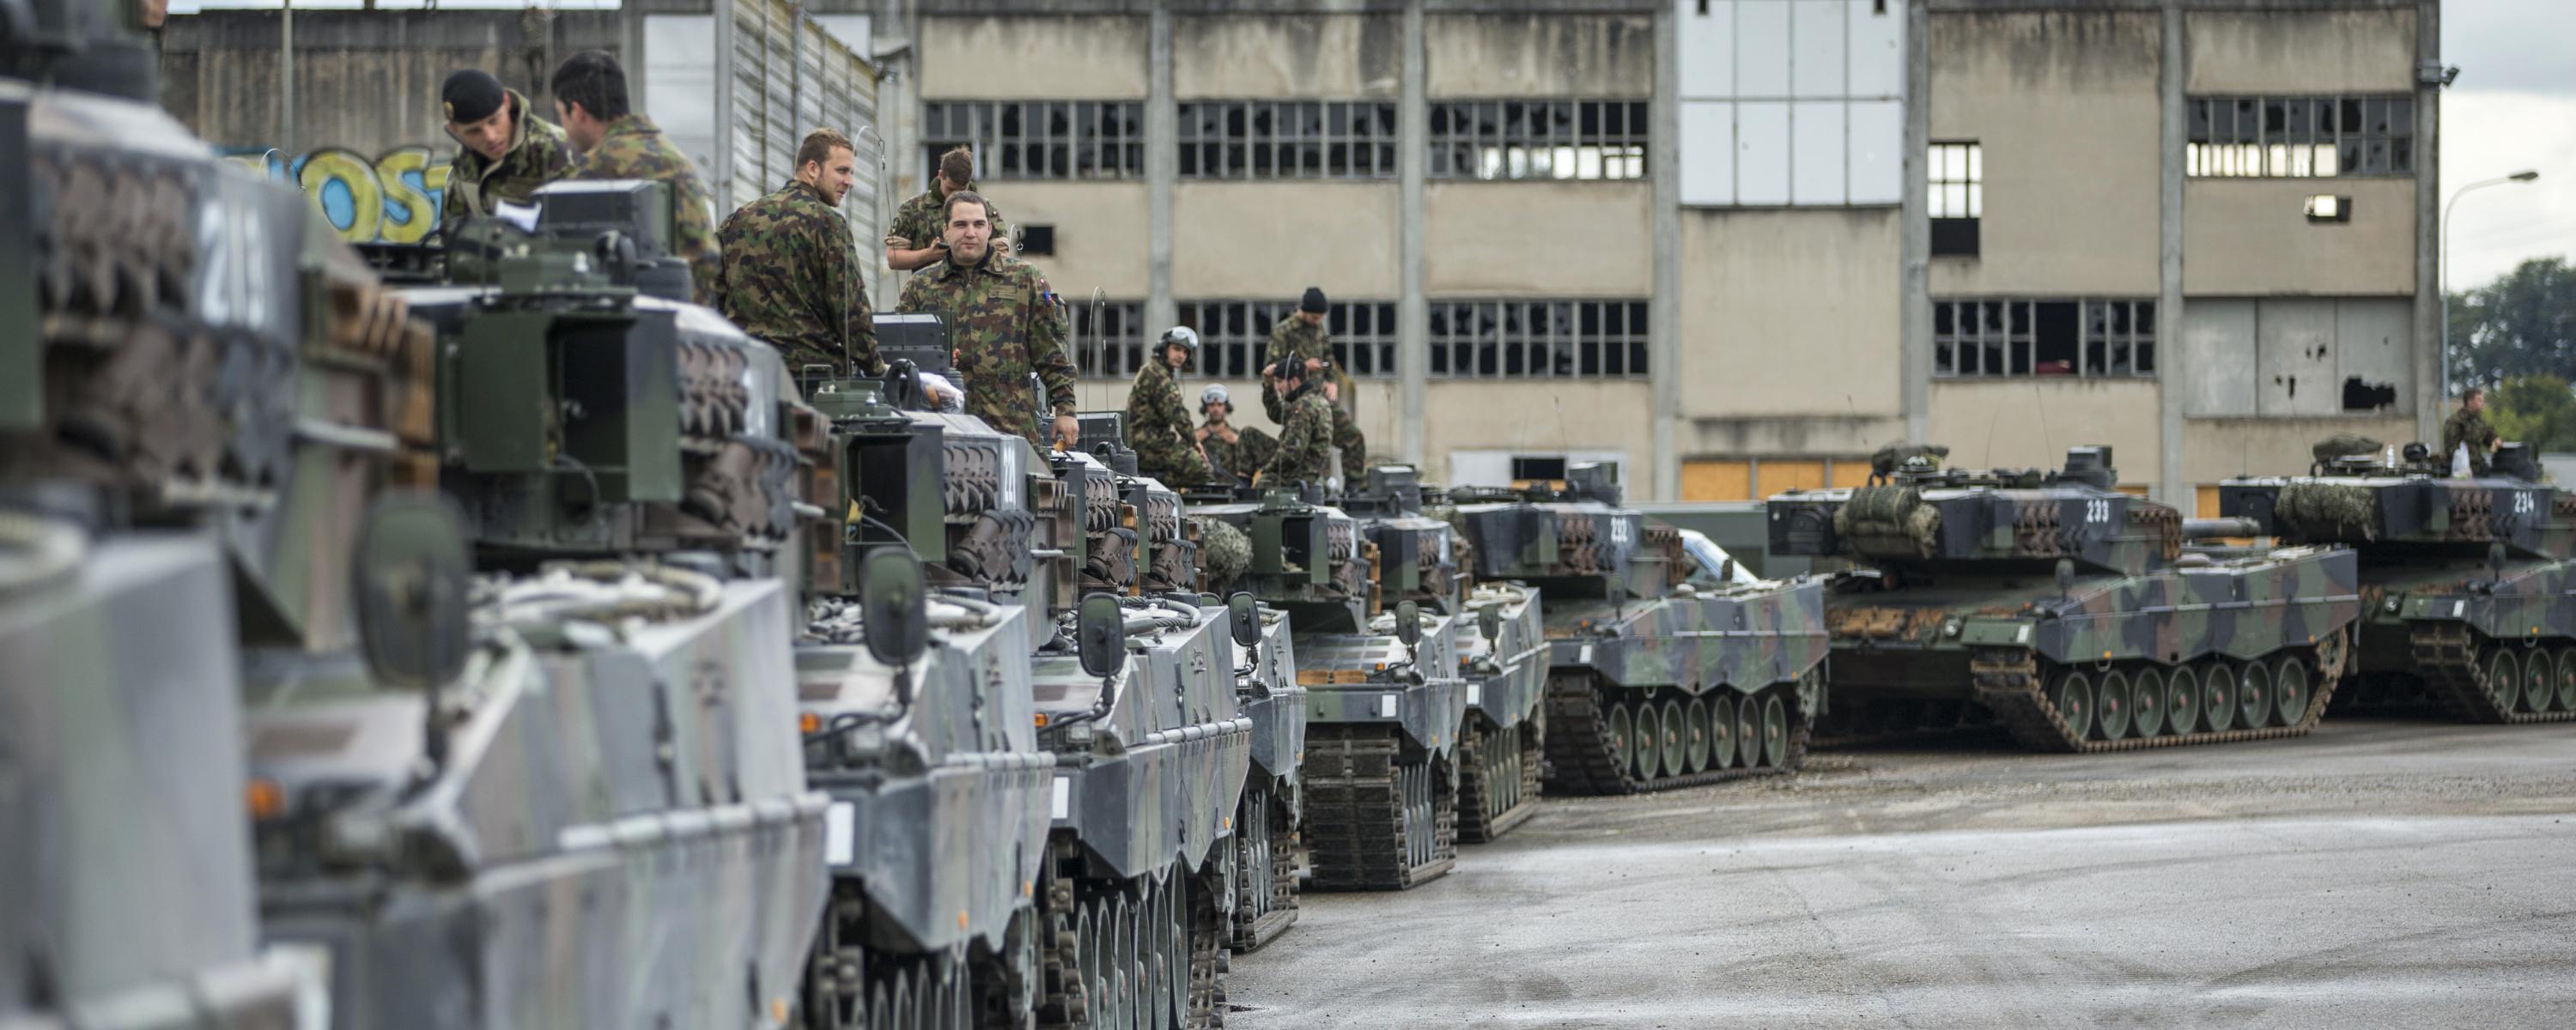 Mehrere Panzer stehen hintereinander auf einem Industriequartier, die Besatzungen sitzen mehrheitlich auf den Panzern.